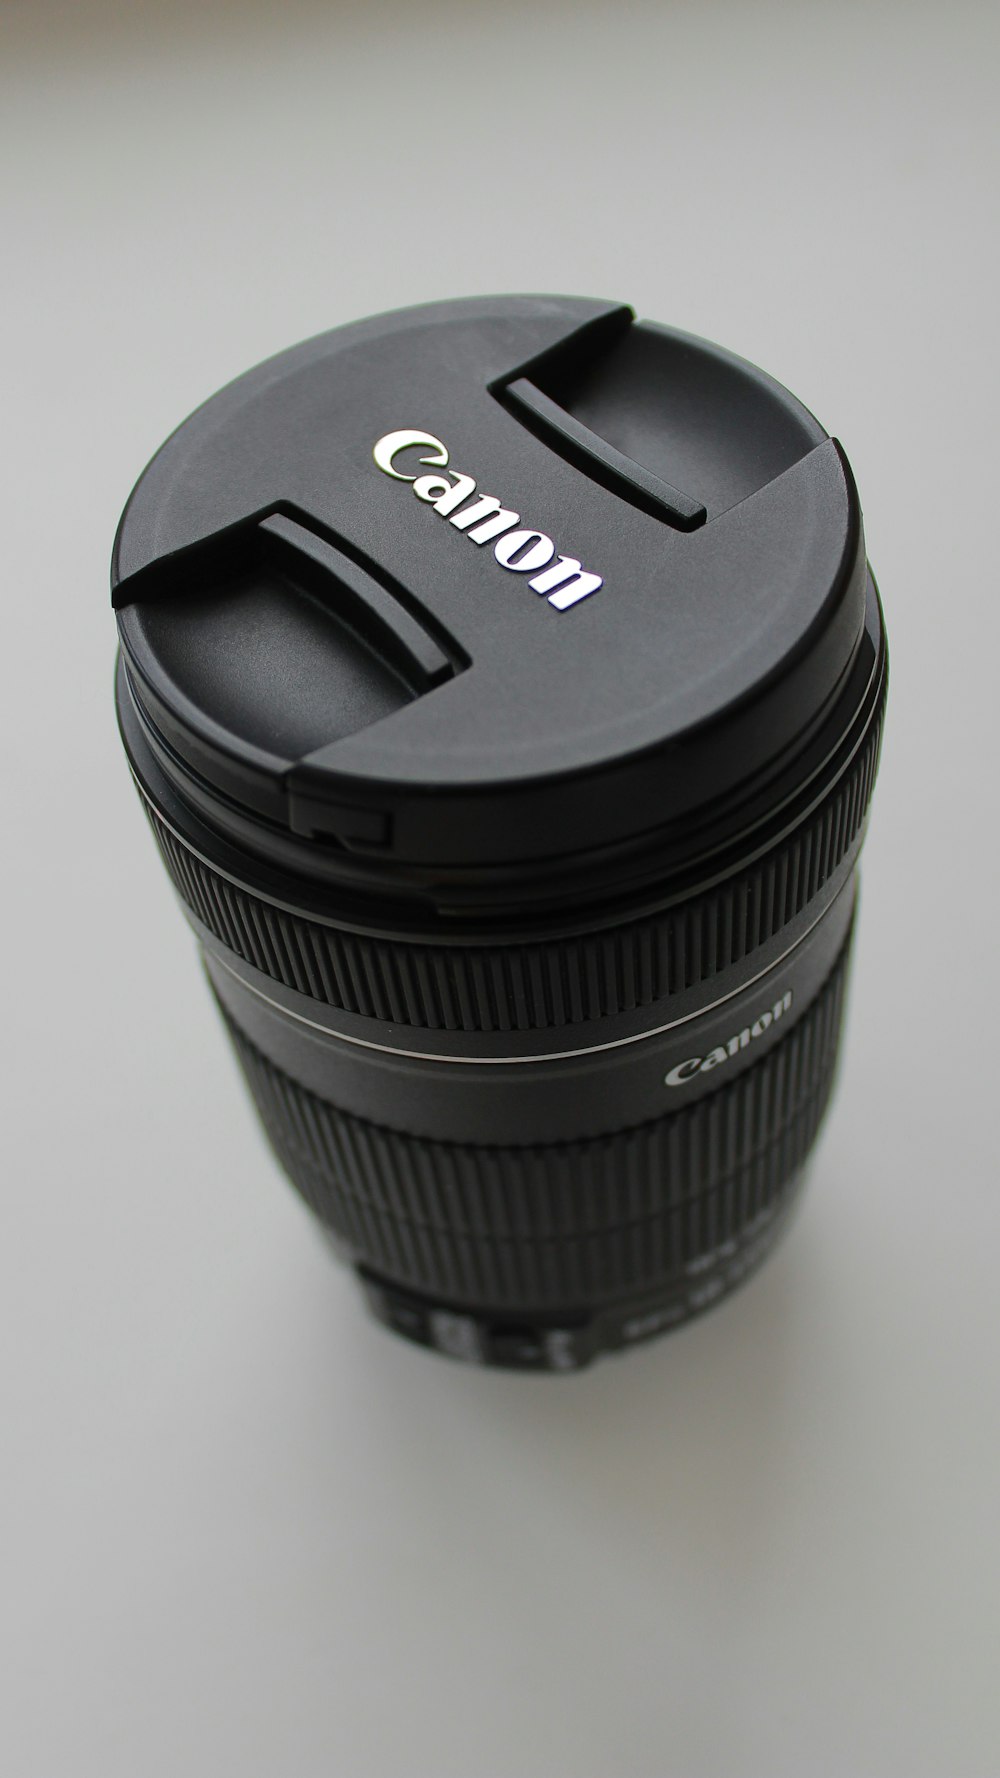 black Canon DSLR camera lens on white tabletop